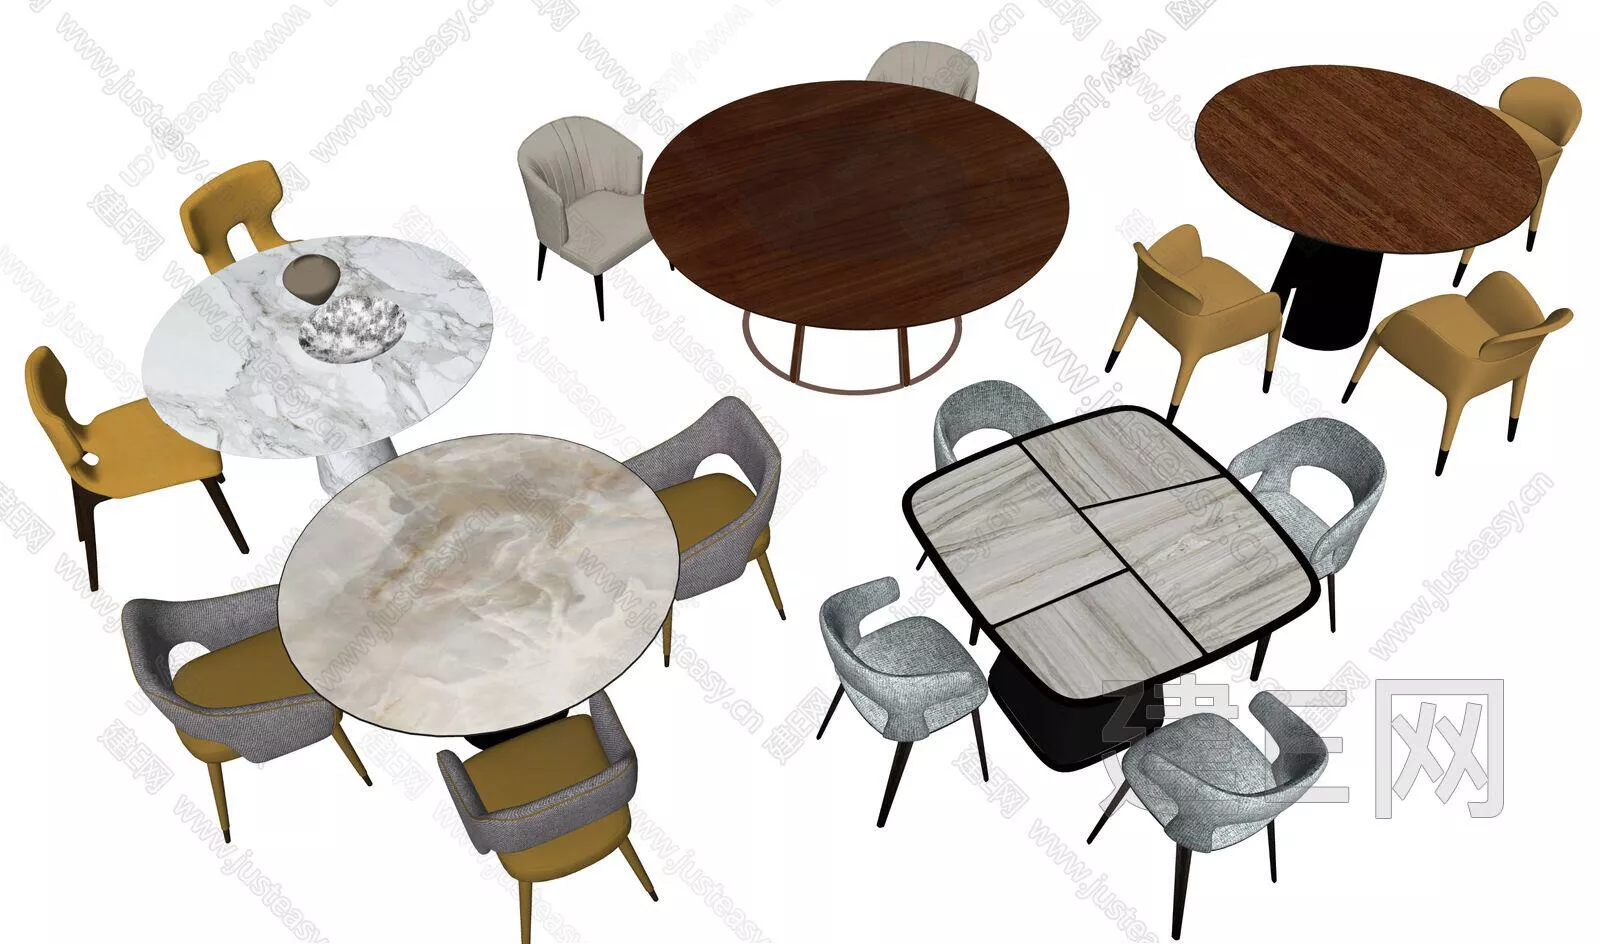 MODERN DINING TABLE SET - SKETCHUP 3D MODEL - ENSCAPE - 111821130